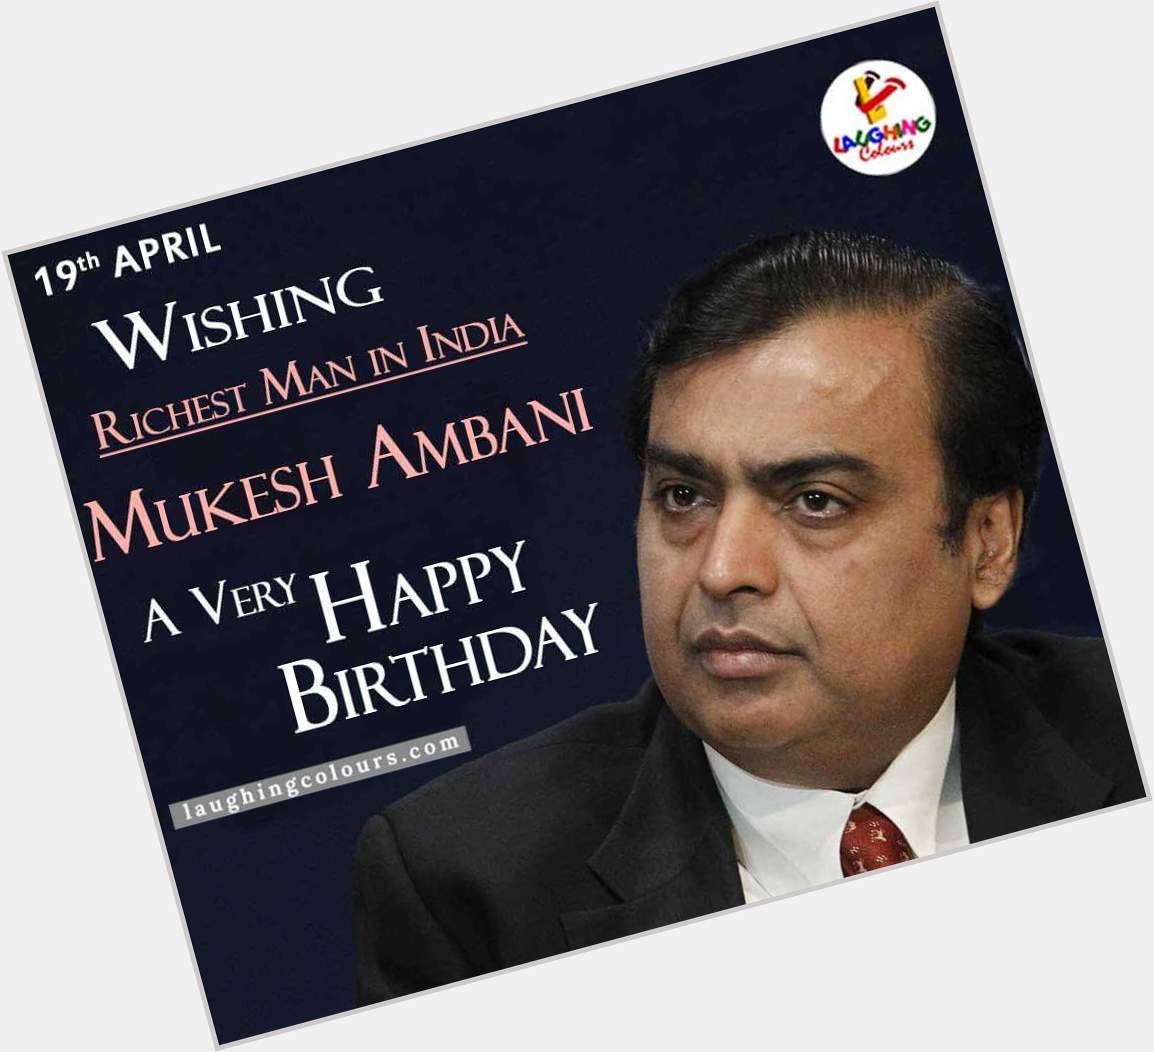 Happy Birthday Mukesh Ambani ji.
Thanks for 